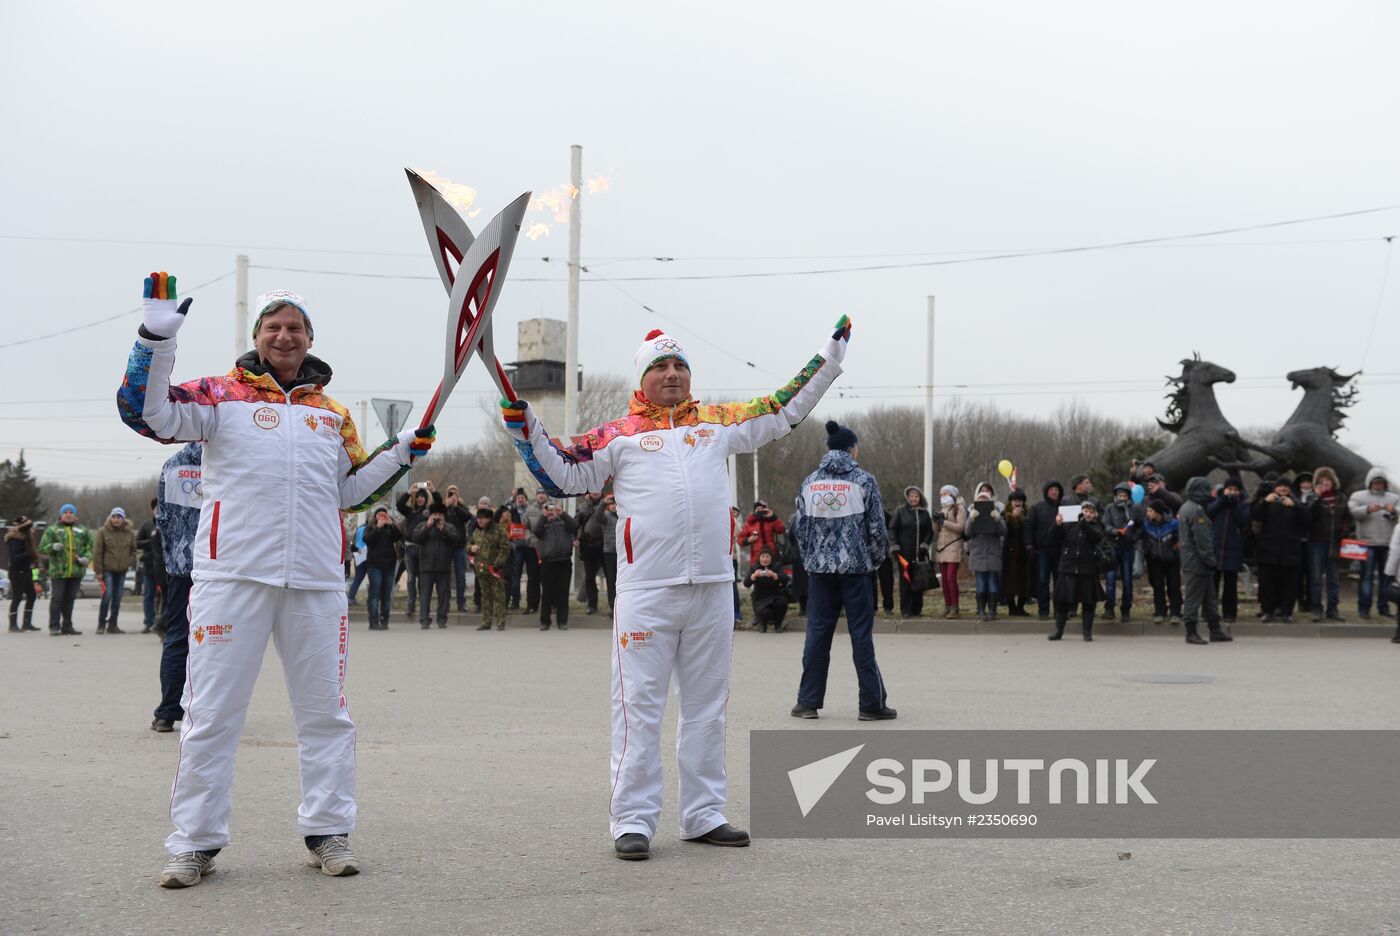 Sochi 2014 Olympic torch relay. Rostov Region